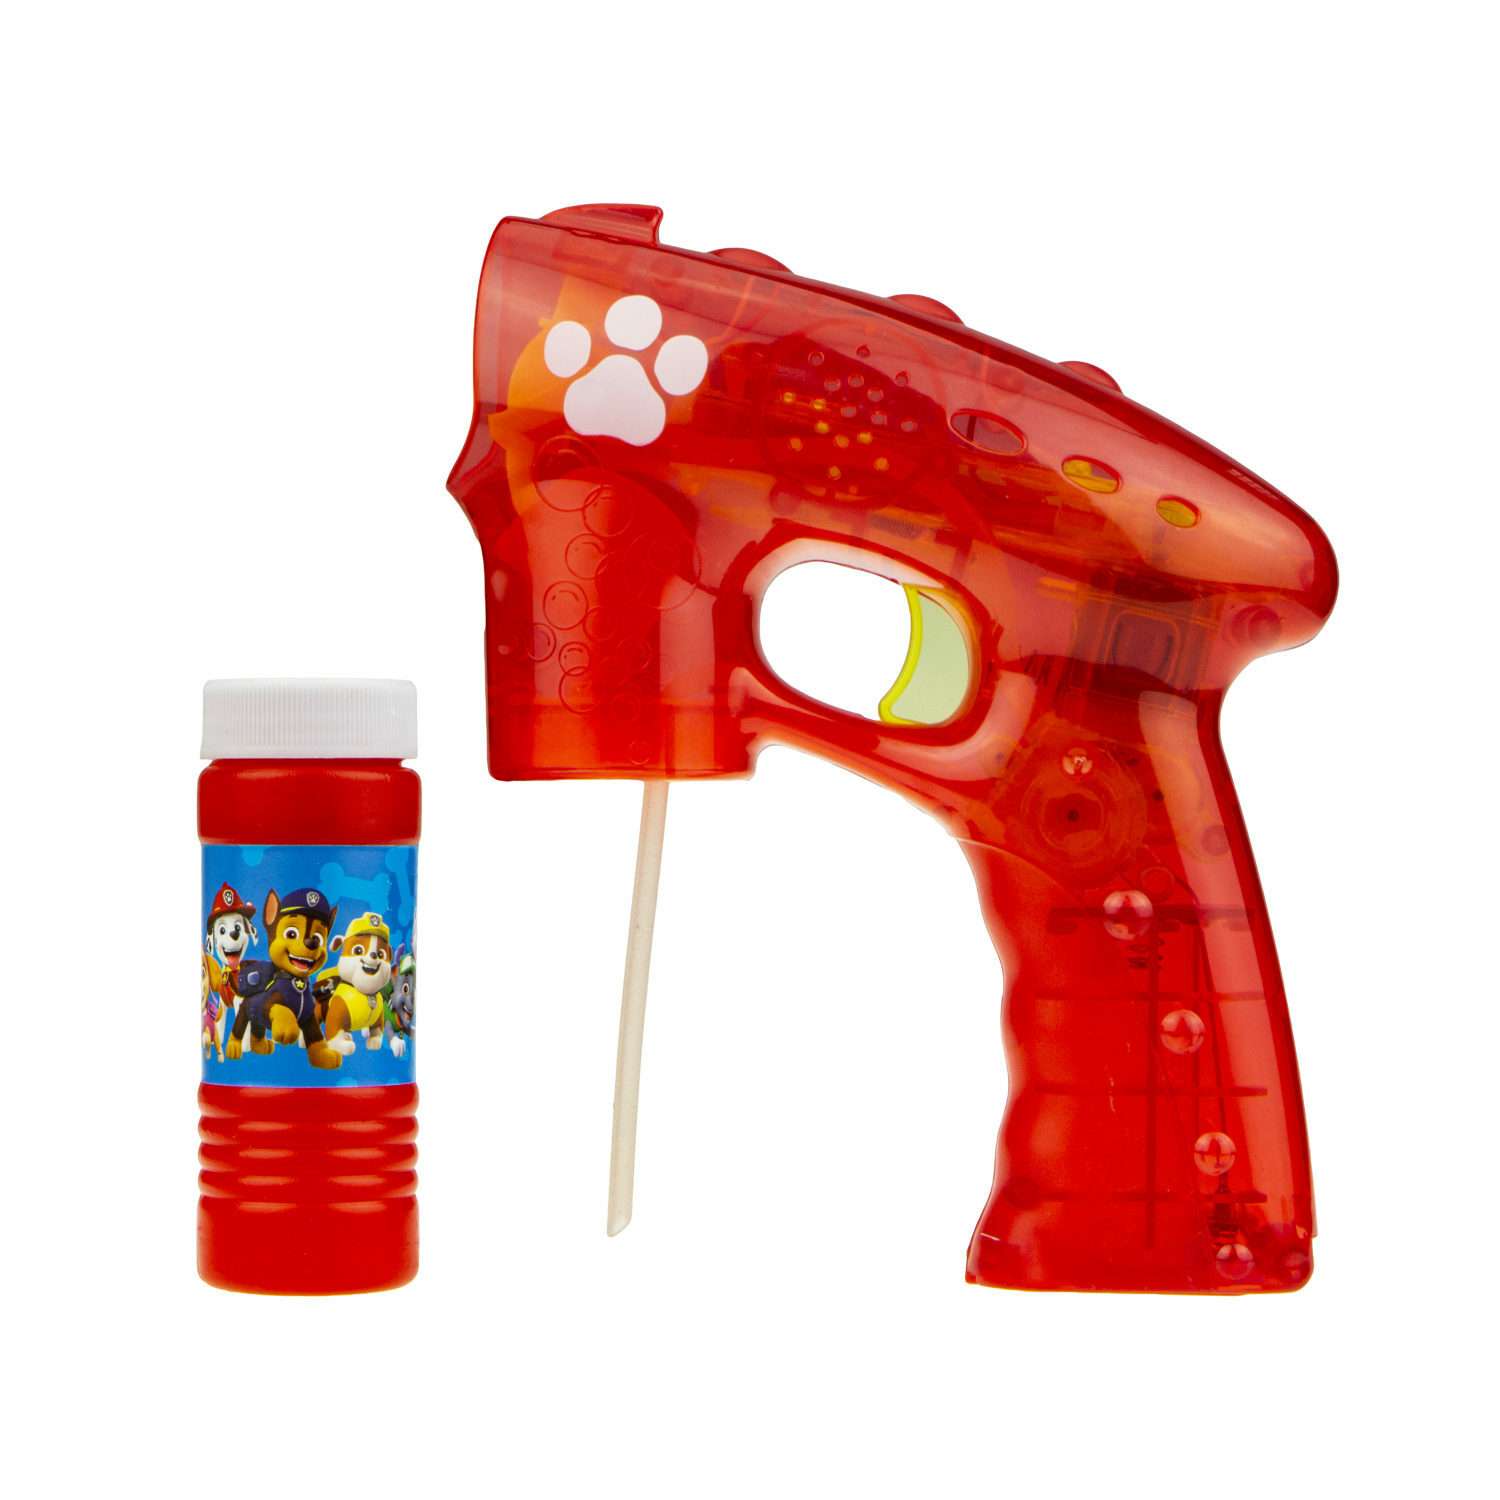 Генератор мыльных пузырей Щенячий патруль 1YOY с раствором со световыми эффектами пистолет бластер детские игрушки для улицы - фото 1